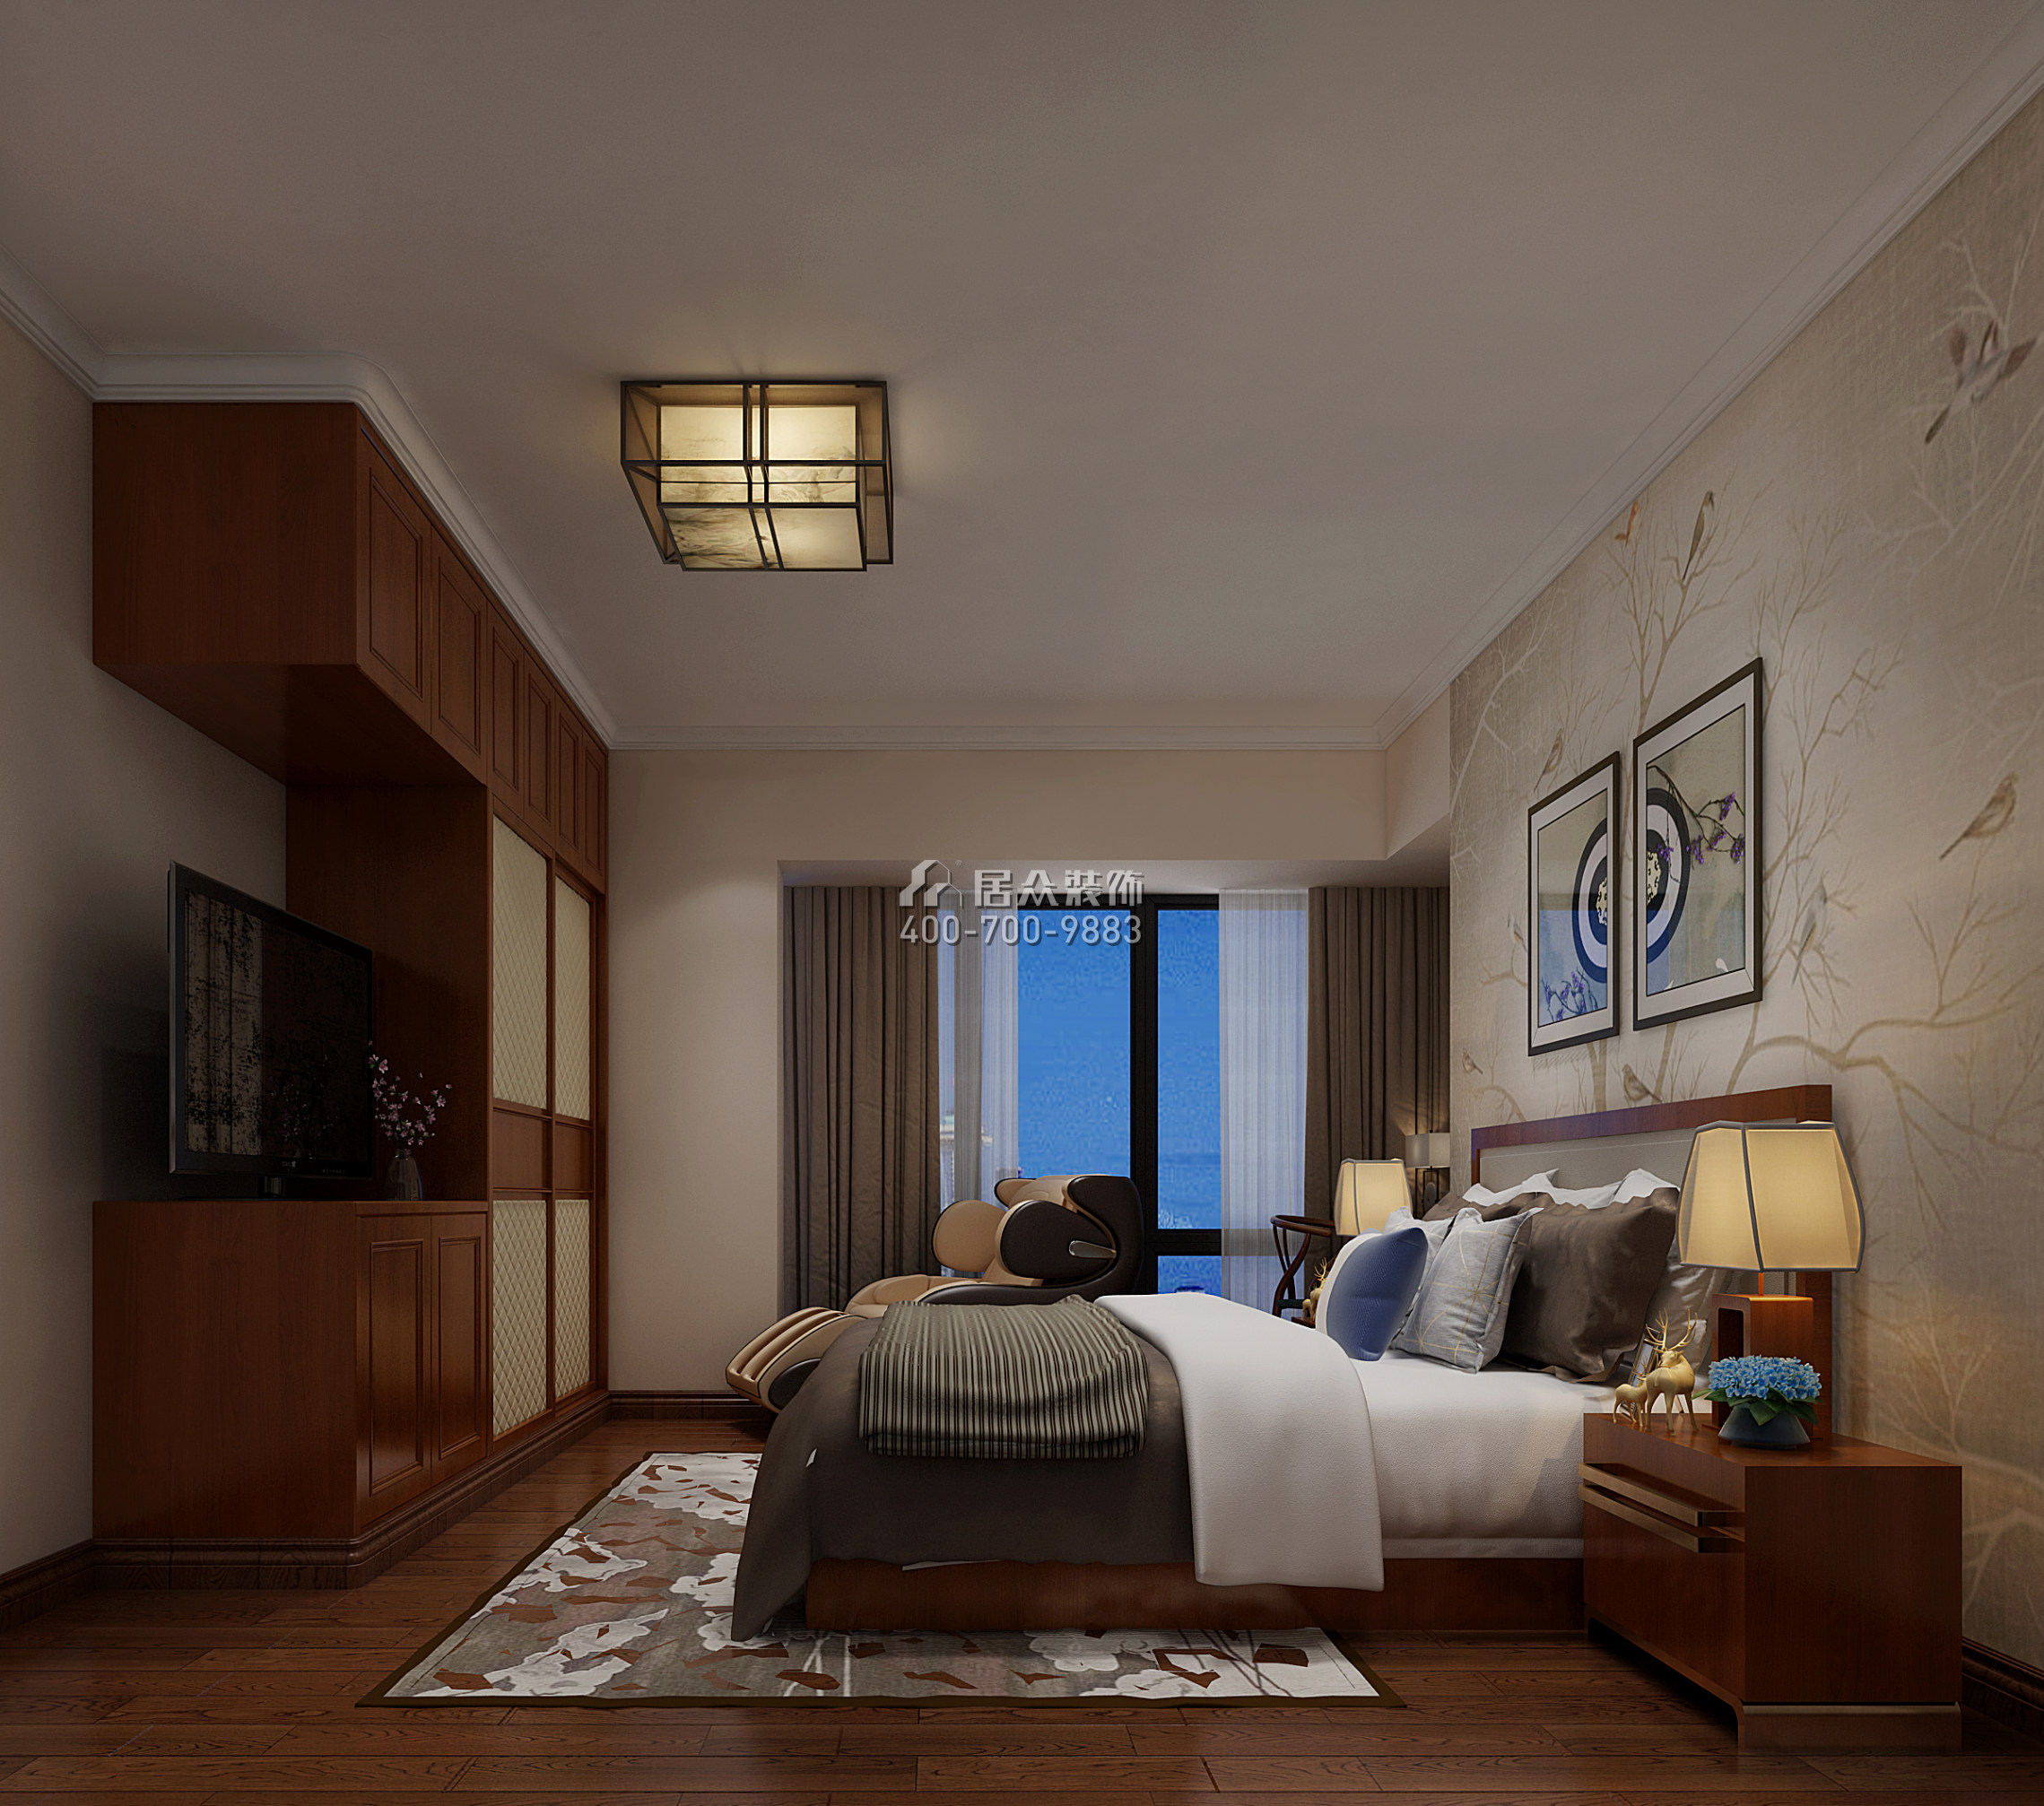 维港半岛169平方米中式风格平层户型卧室装修效果图